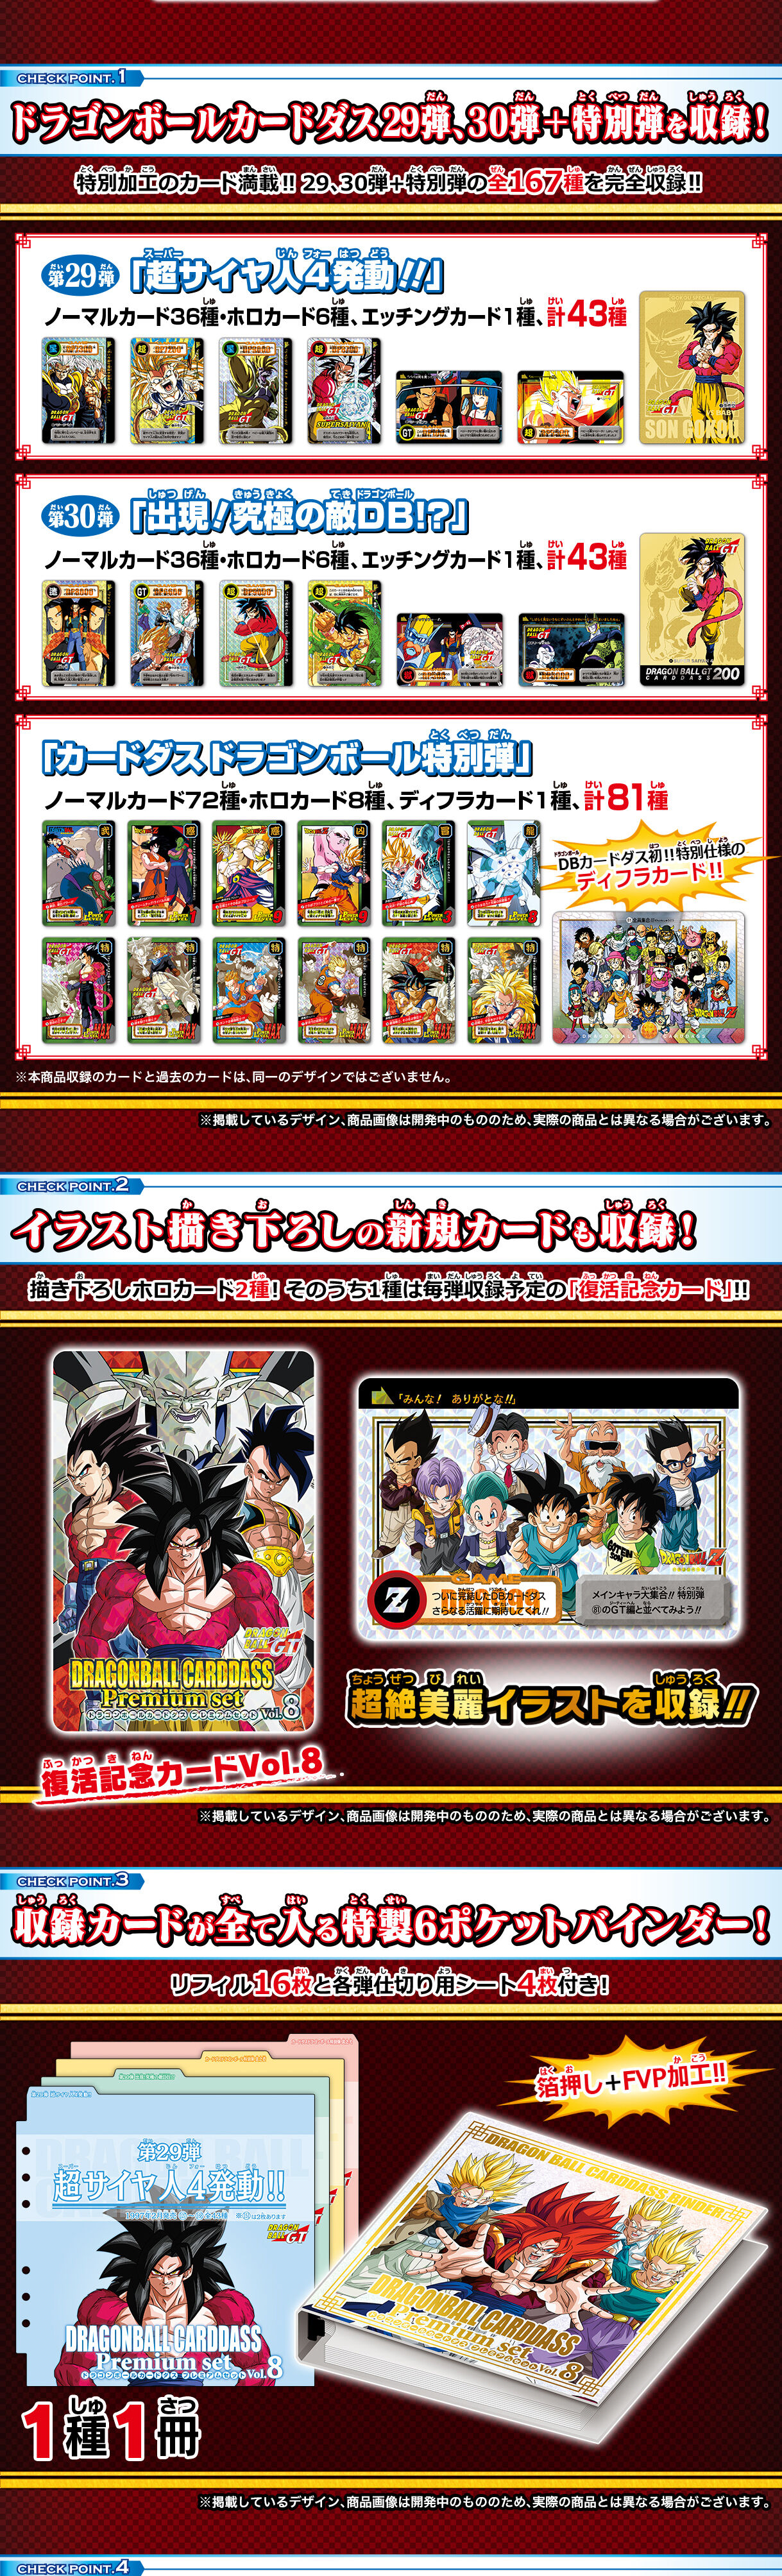 ドラゴンボール カードダス Premium set Vol.8 新規カード2枚